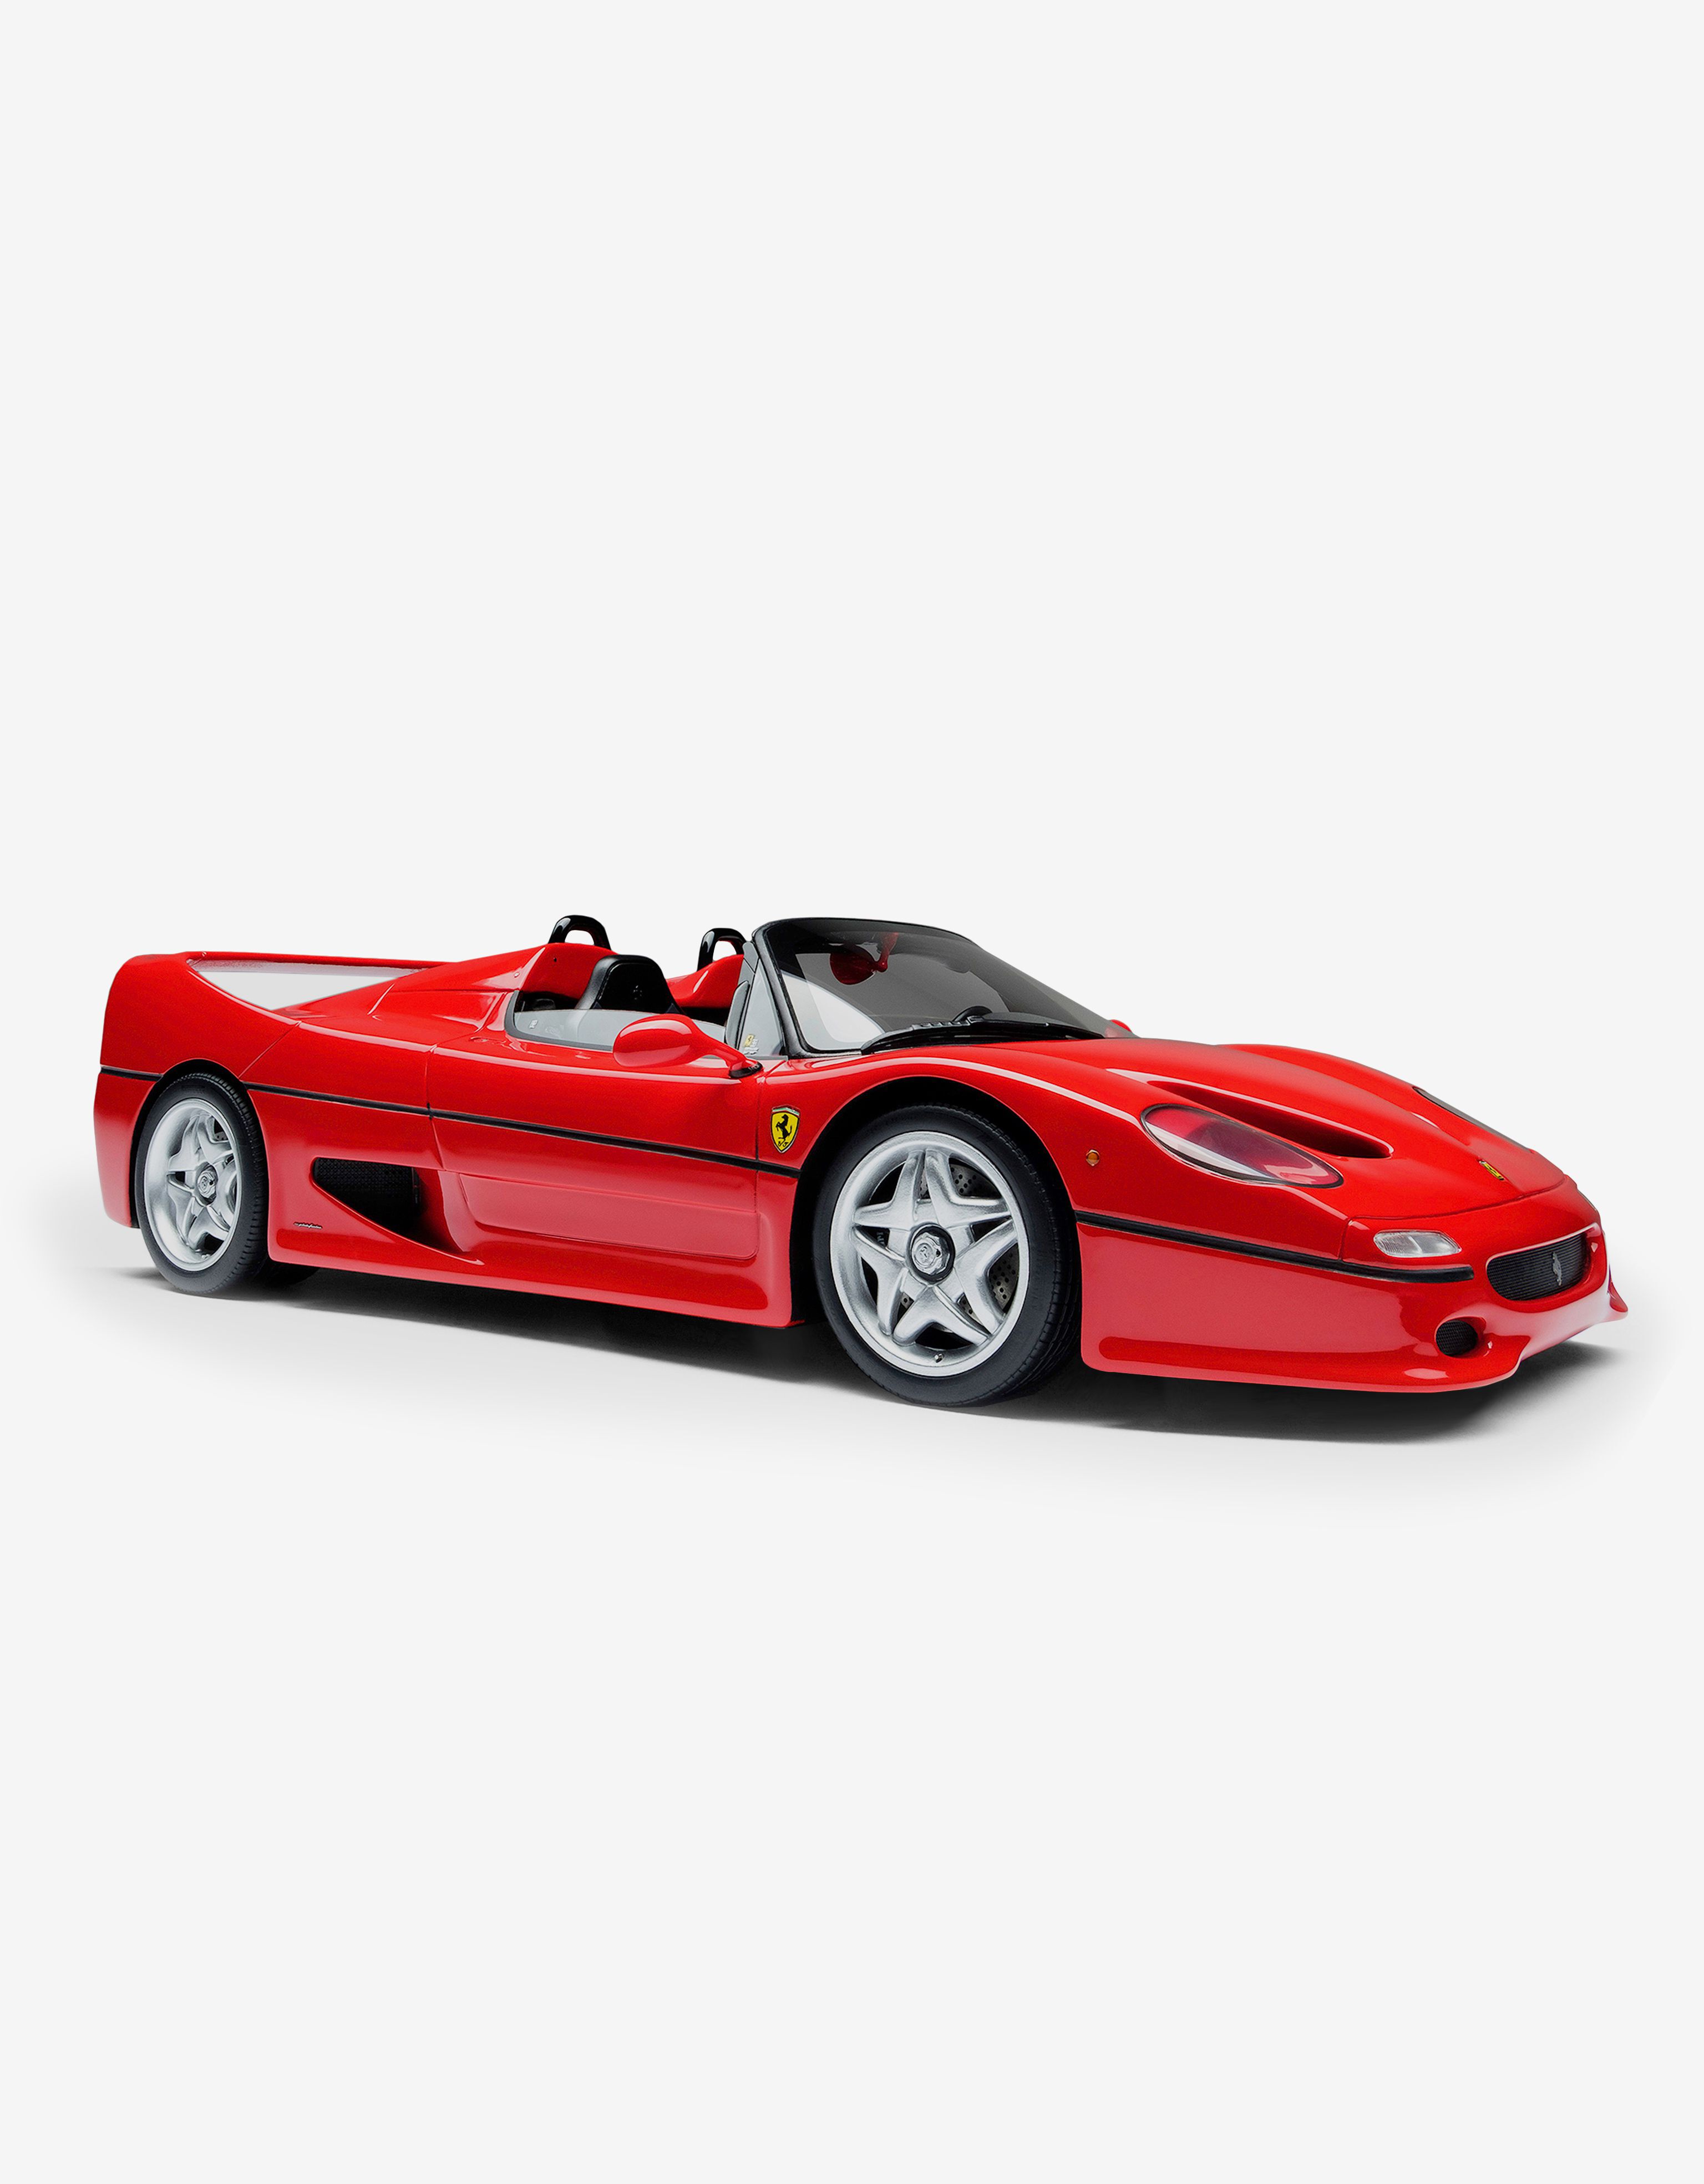 Ferrari Ferrari F50 model in 1:18 scale Red L7588f